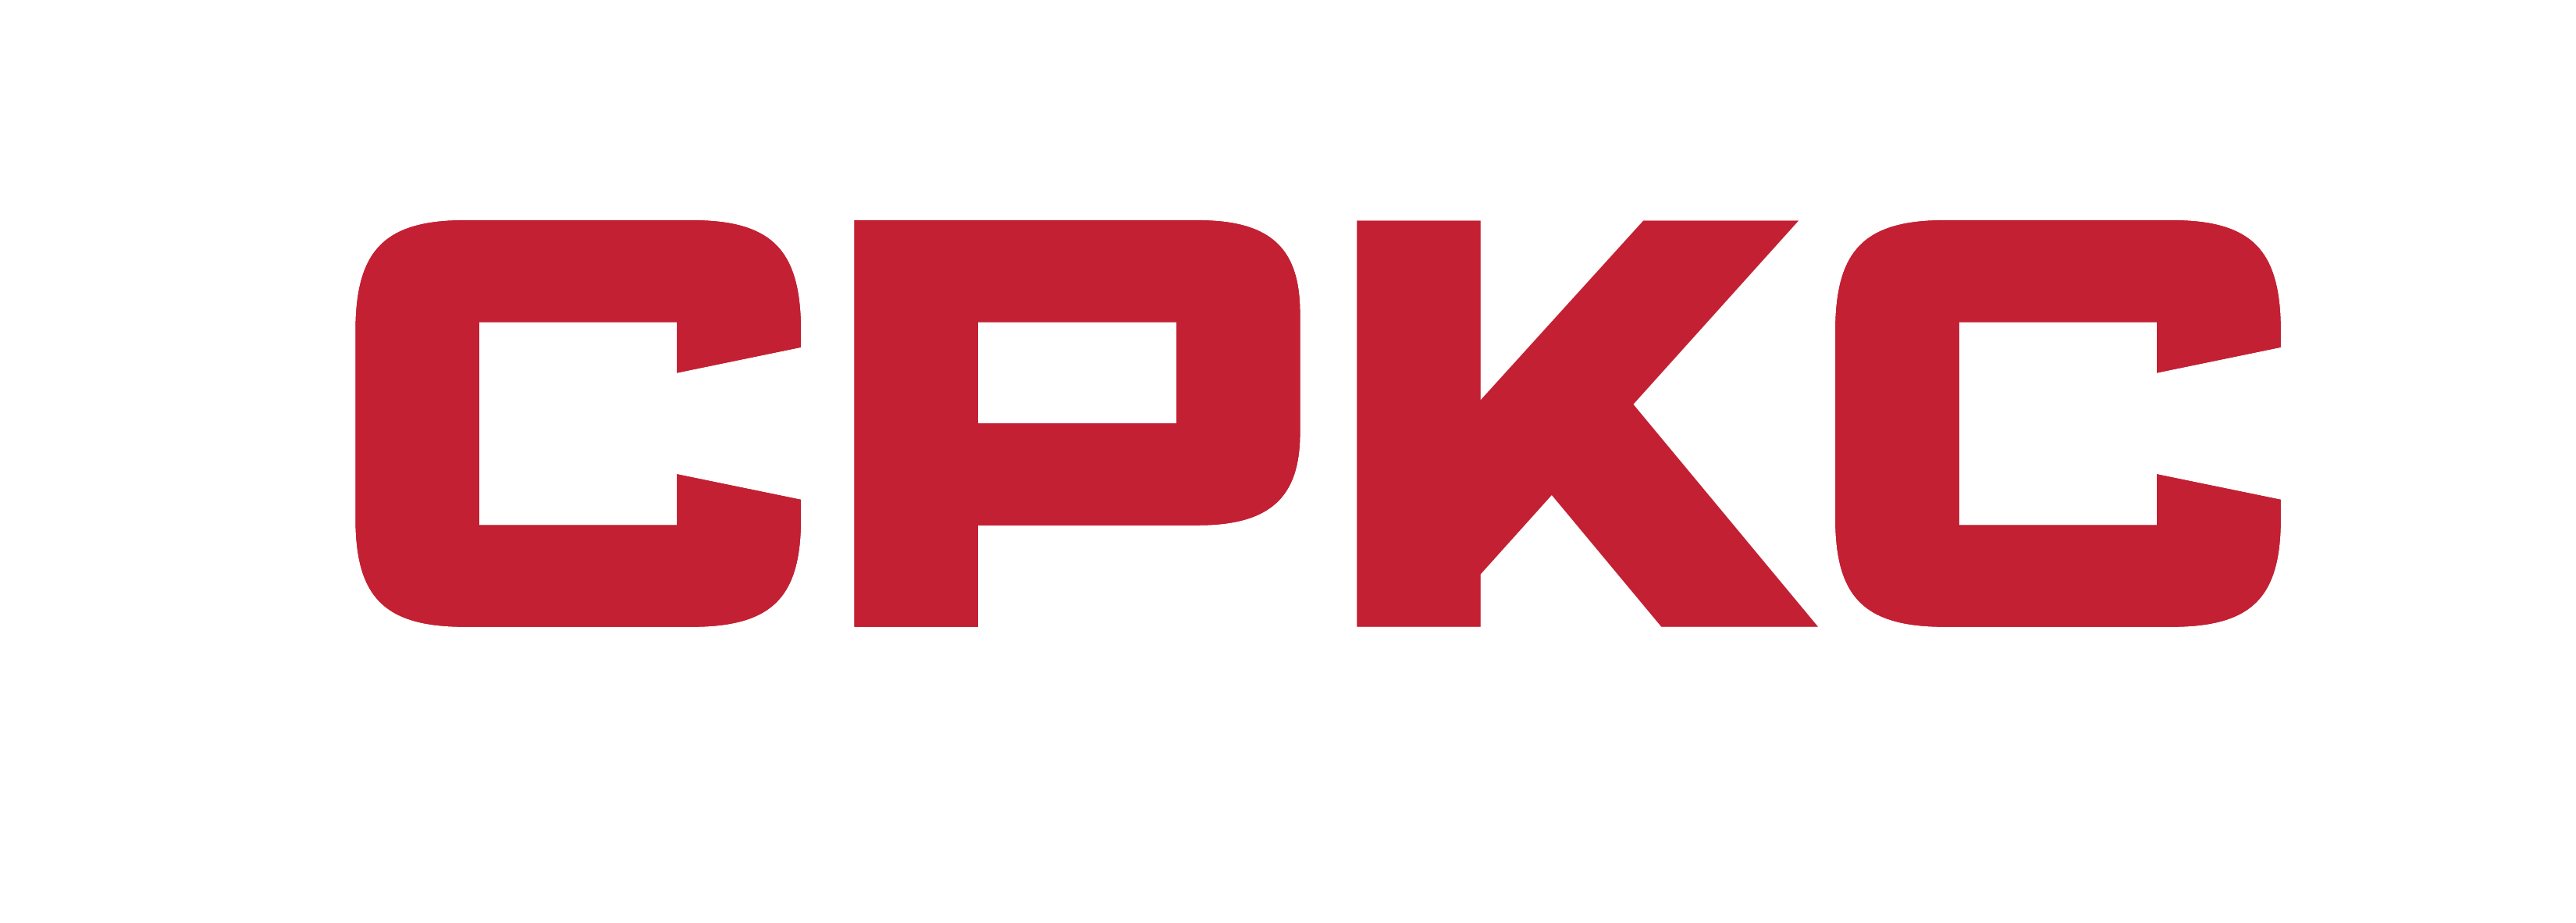 CPKC logo